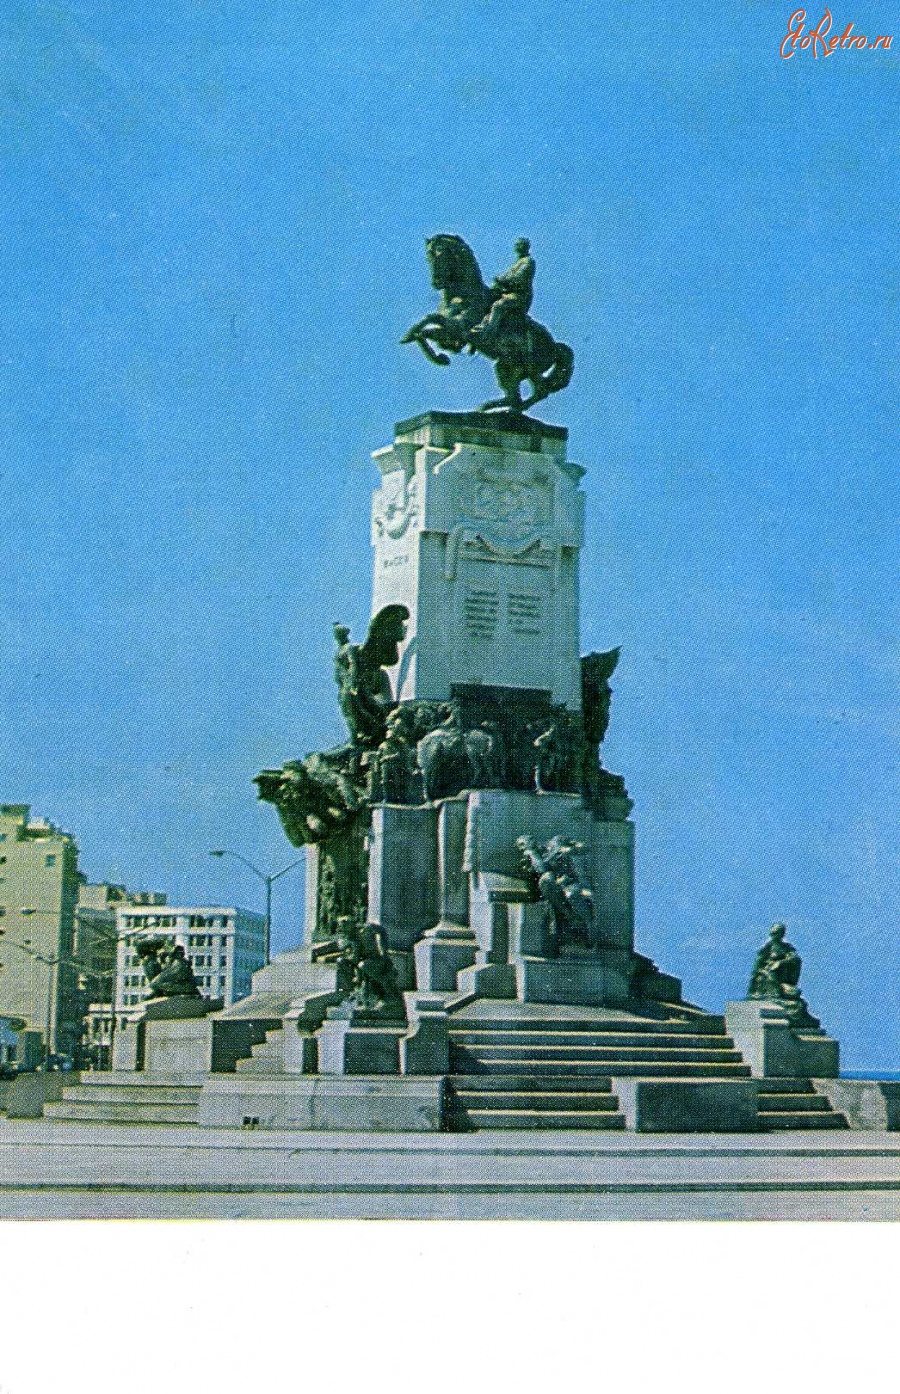 Куба - Гавана. Памятник Антонио Масео - герою национально-освободительной борьбы кубинского народа против испанского ига.